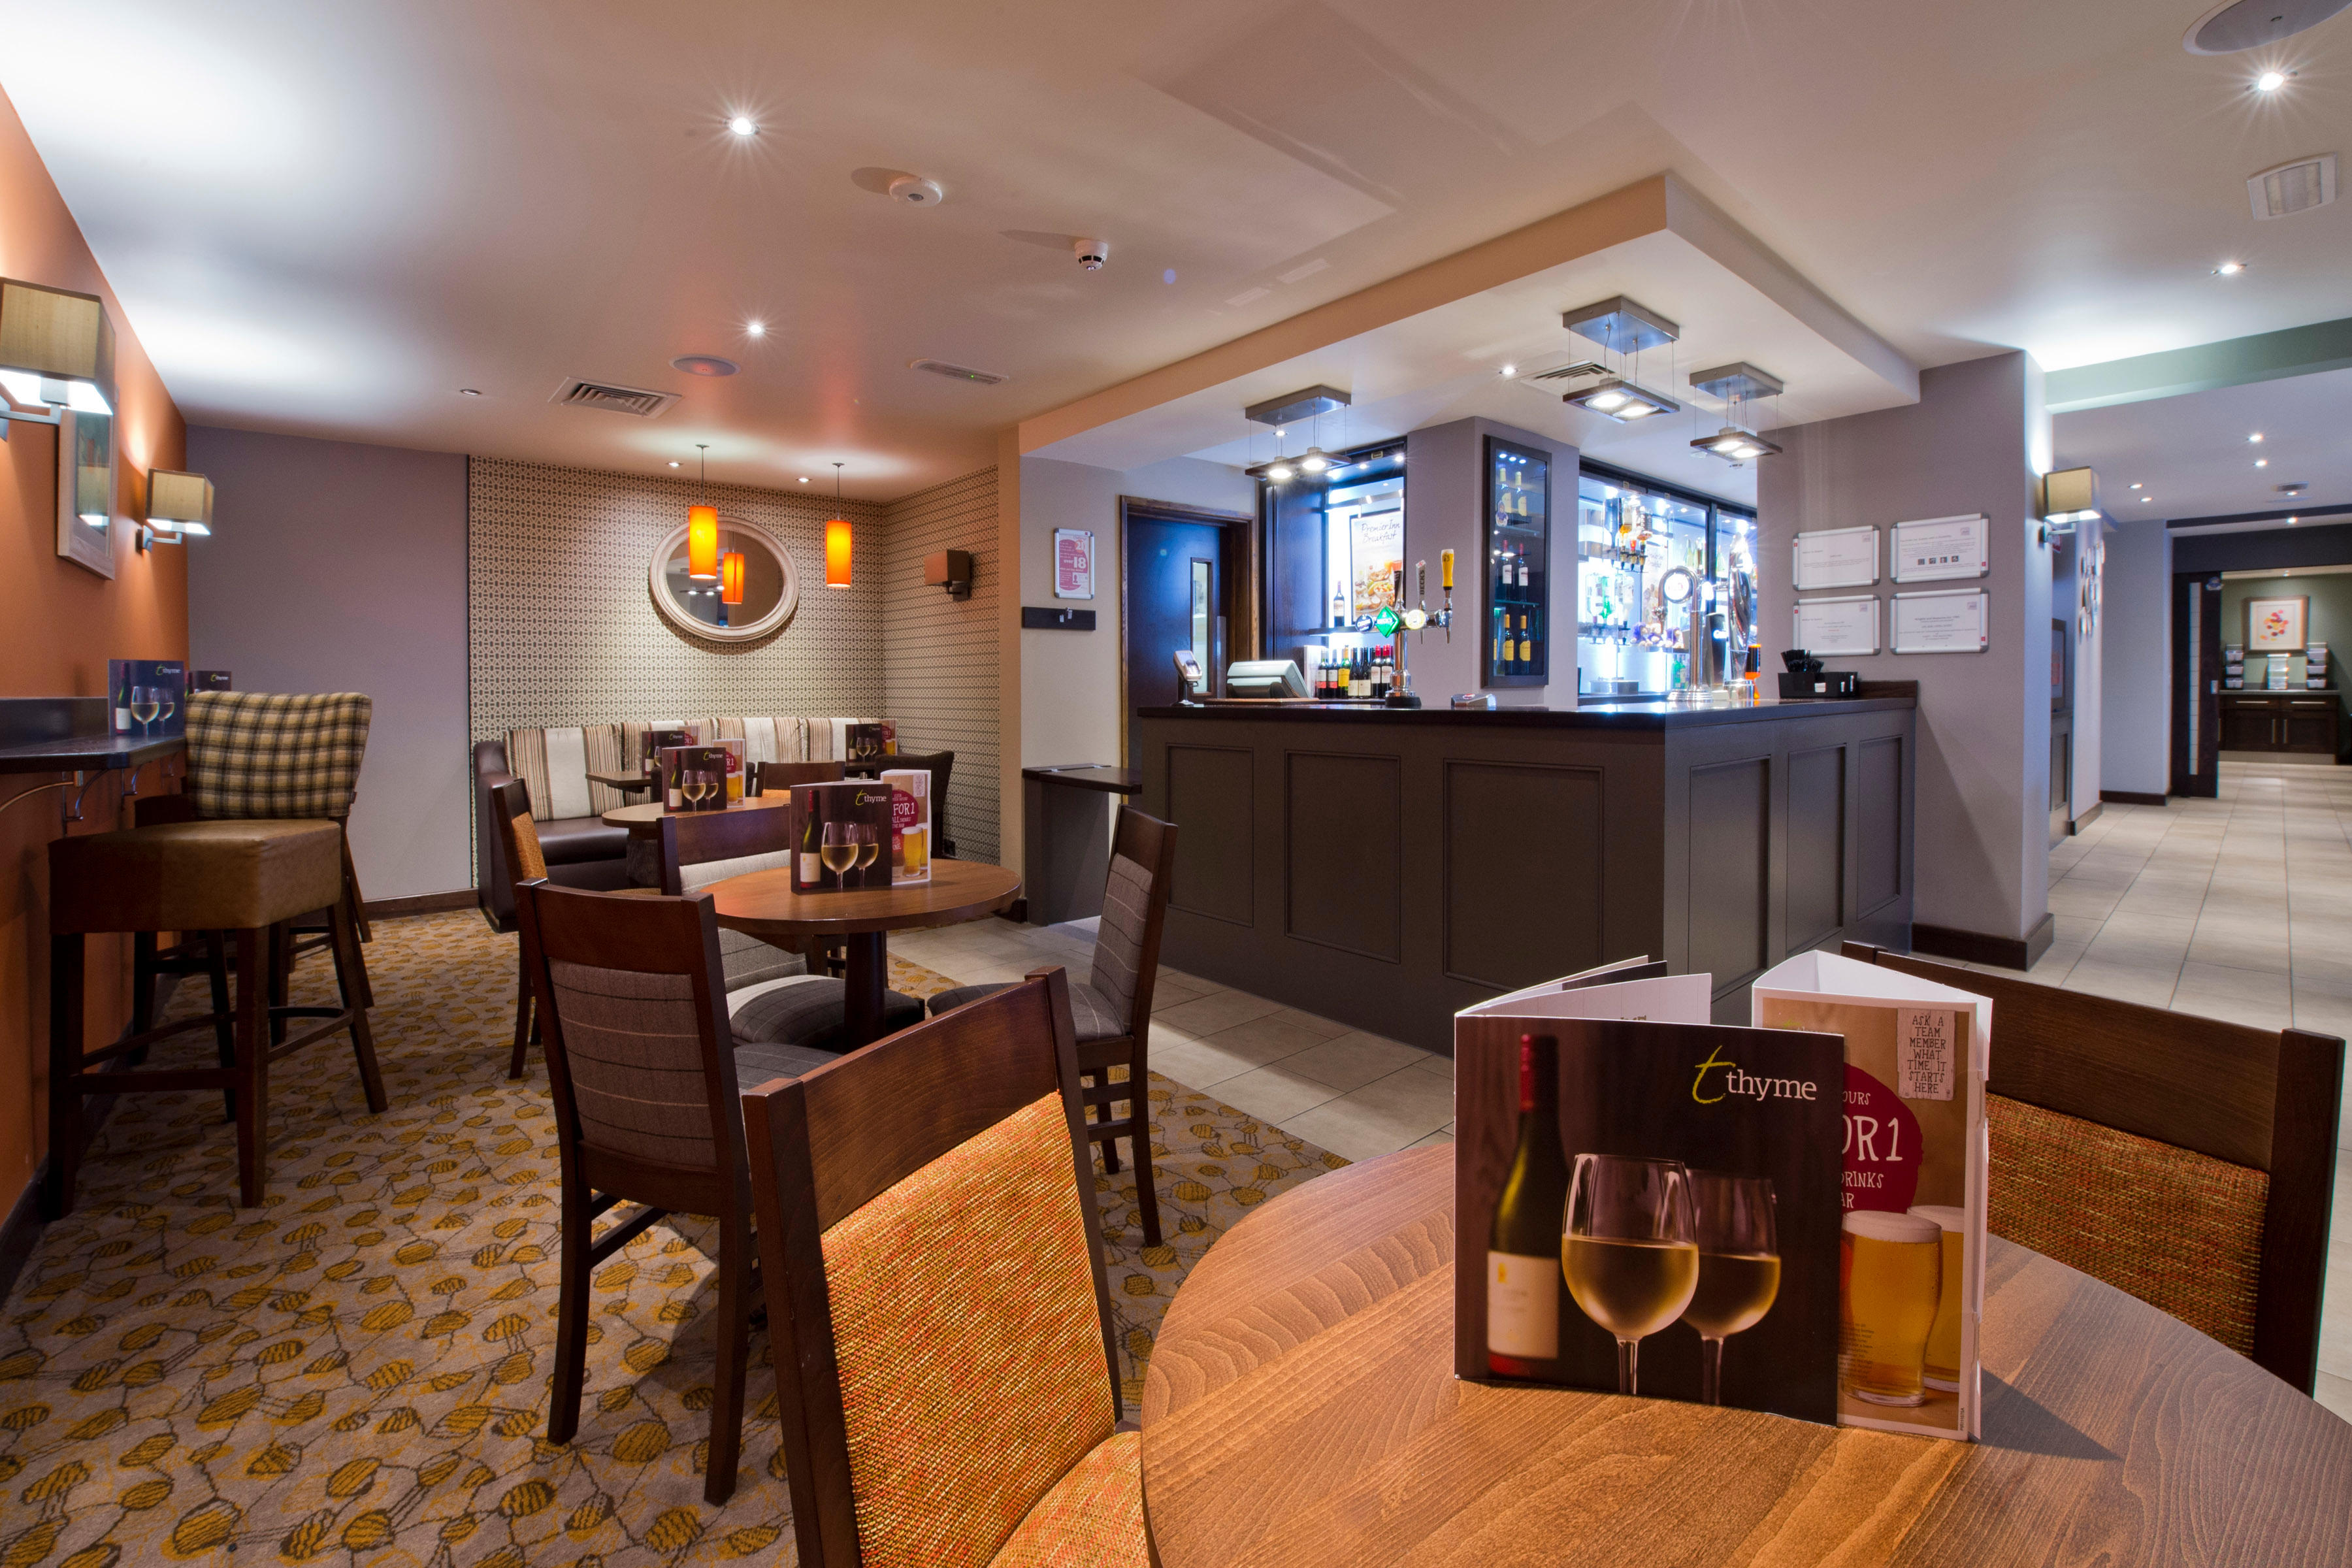 Thyme restaurant interior Premier Inn Sunderland City Centre hotel Sunderland 03330 037893